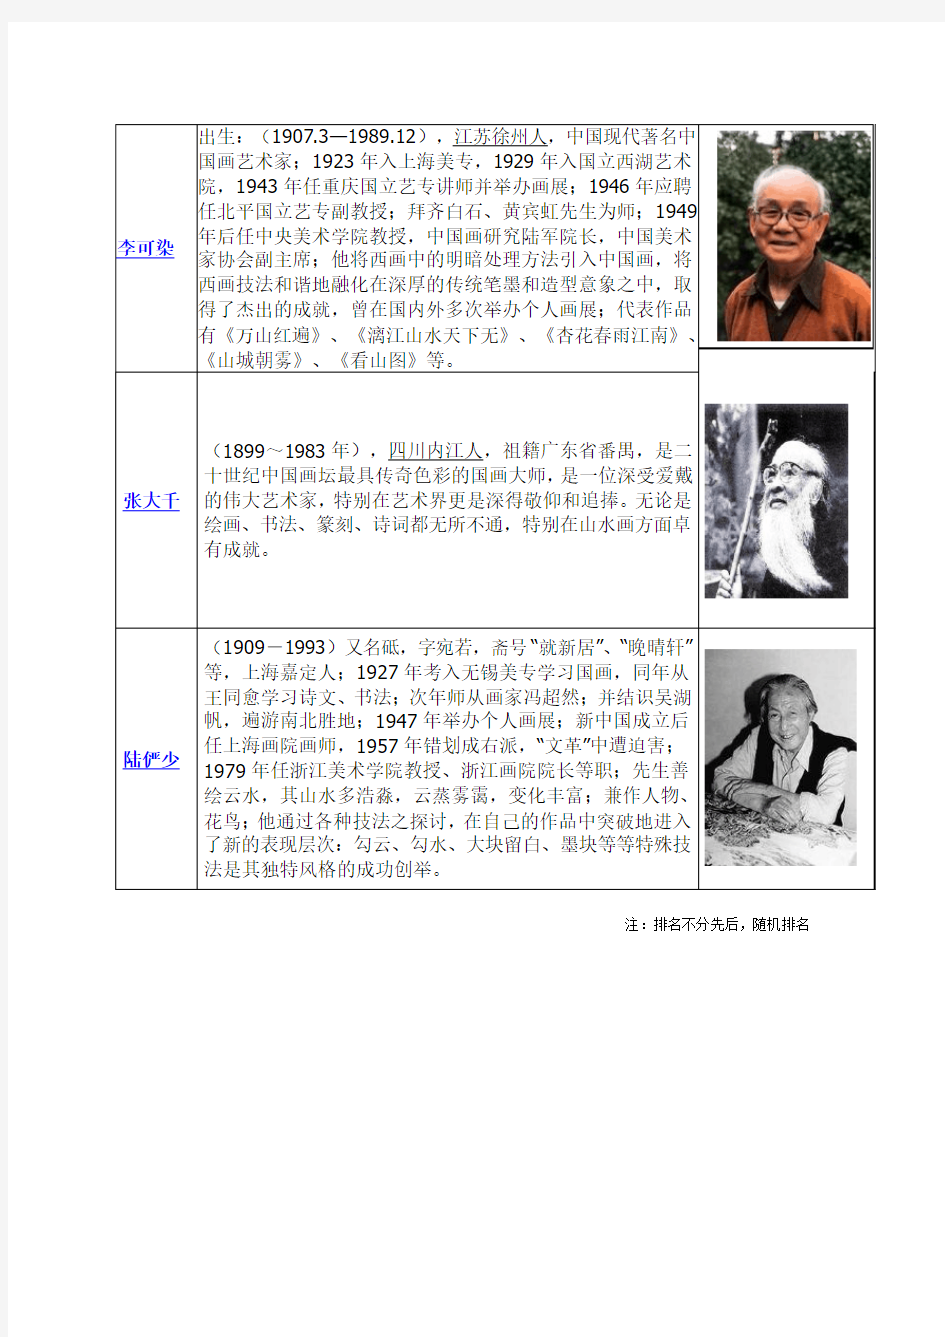 中国著名书画家排名表,九余堂书画名人表